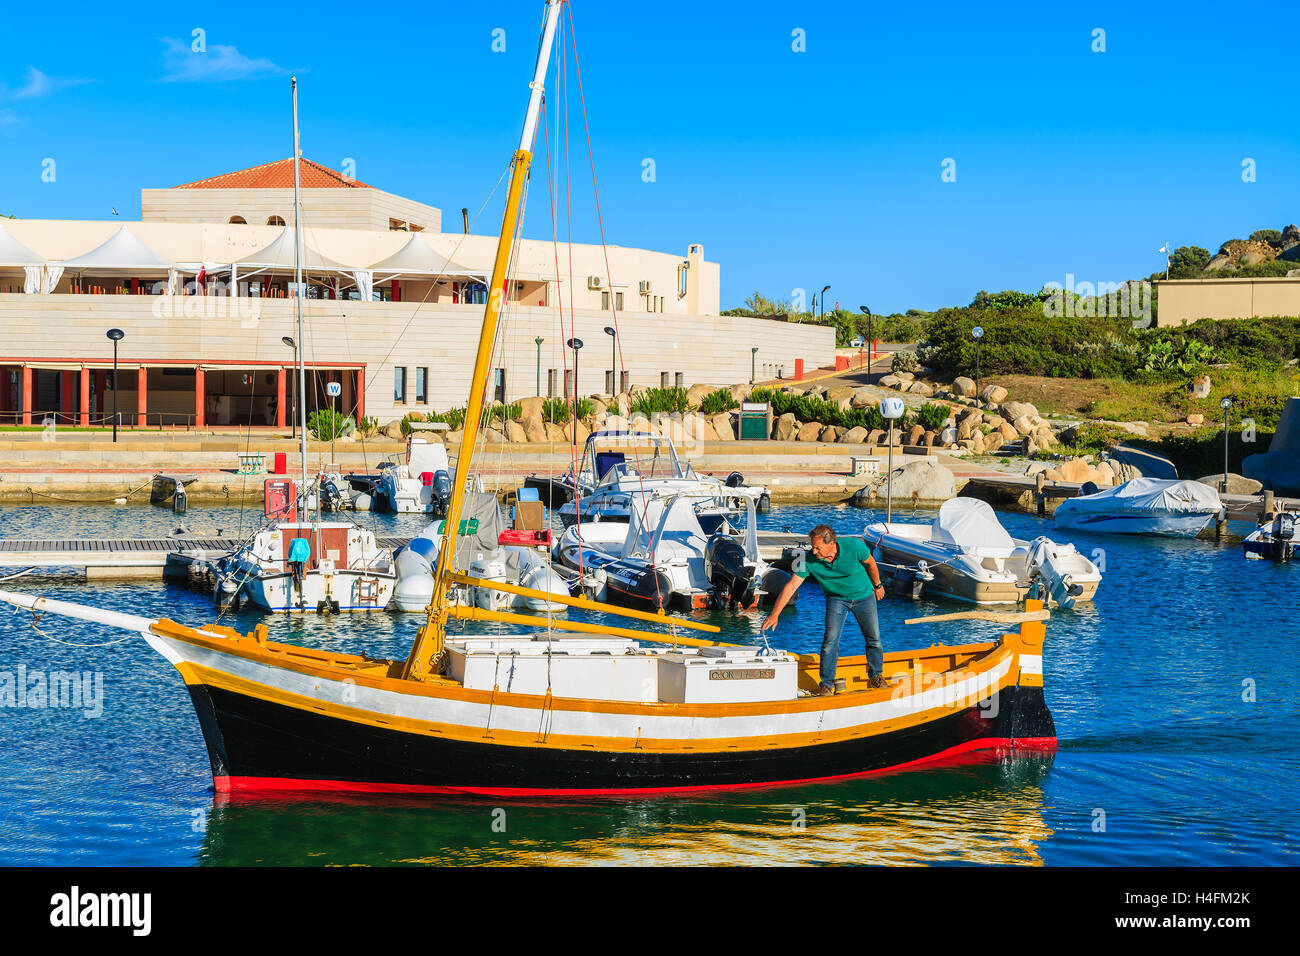 Der Hafen PORTO GIUNCO, Sardinien - 27. Mai 2014: Fischerboot kehrt vom offenen Meer zum Hafen von Porto Giunco. Viele Fischer hier Boote ankern und verkaufen frischen Fisch zu den Restaurants am Hafen. Stockfoto